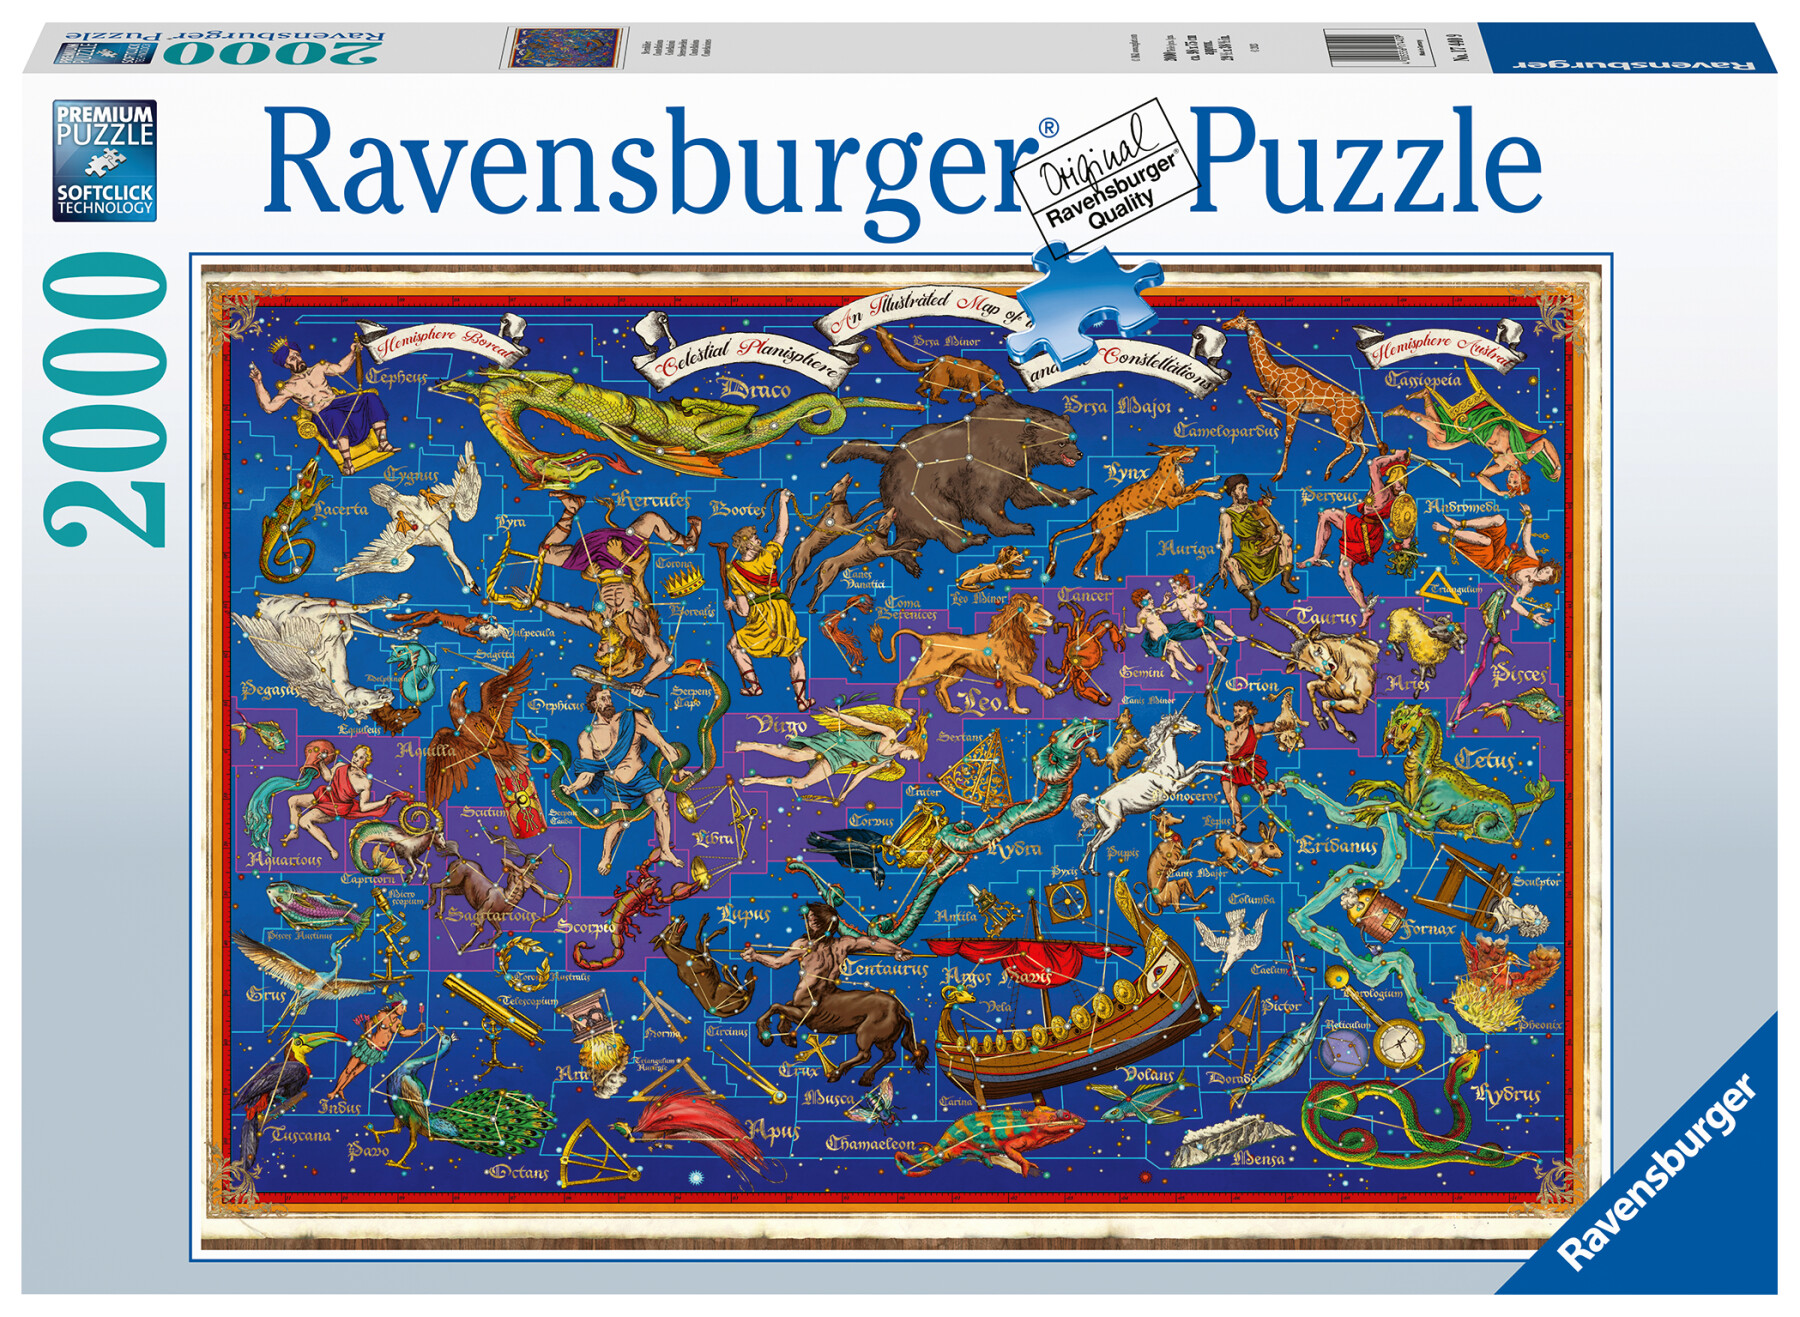 Ravensburger - puzzle costellazioni, 2000 pezzi, puzzle adulti - Toys Center